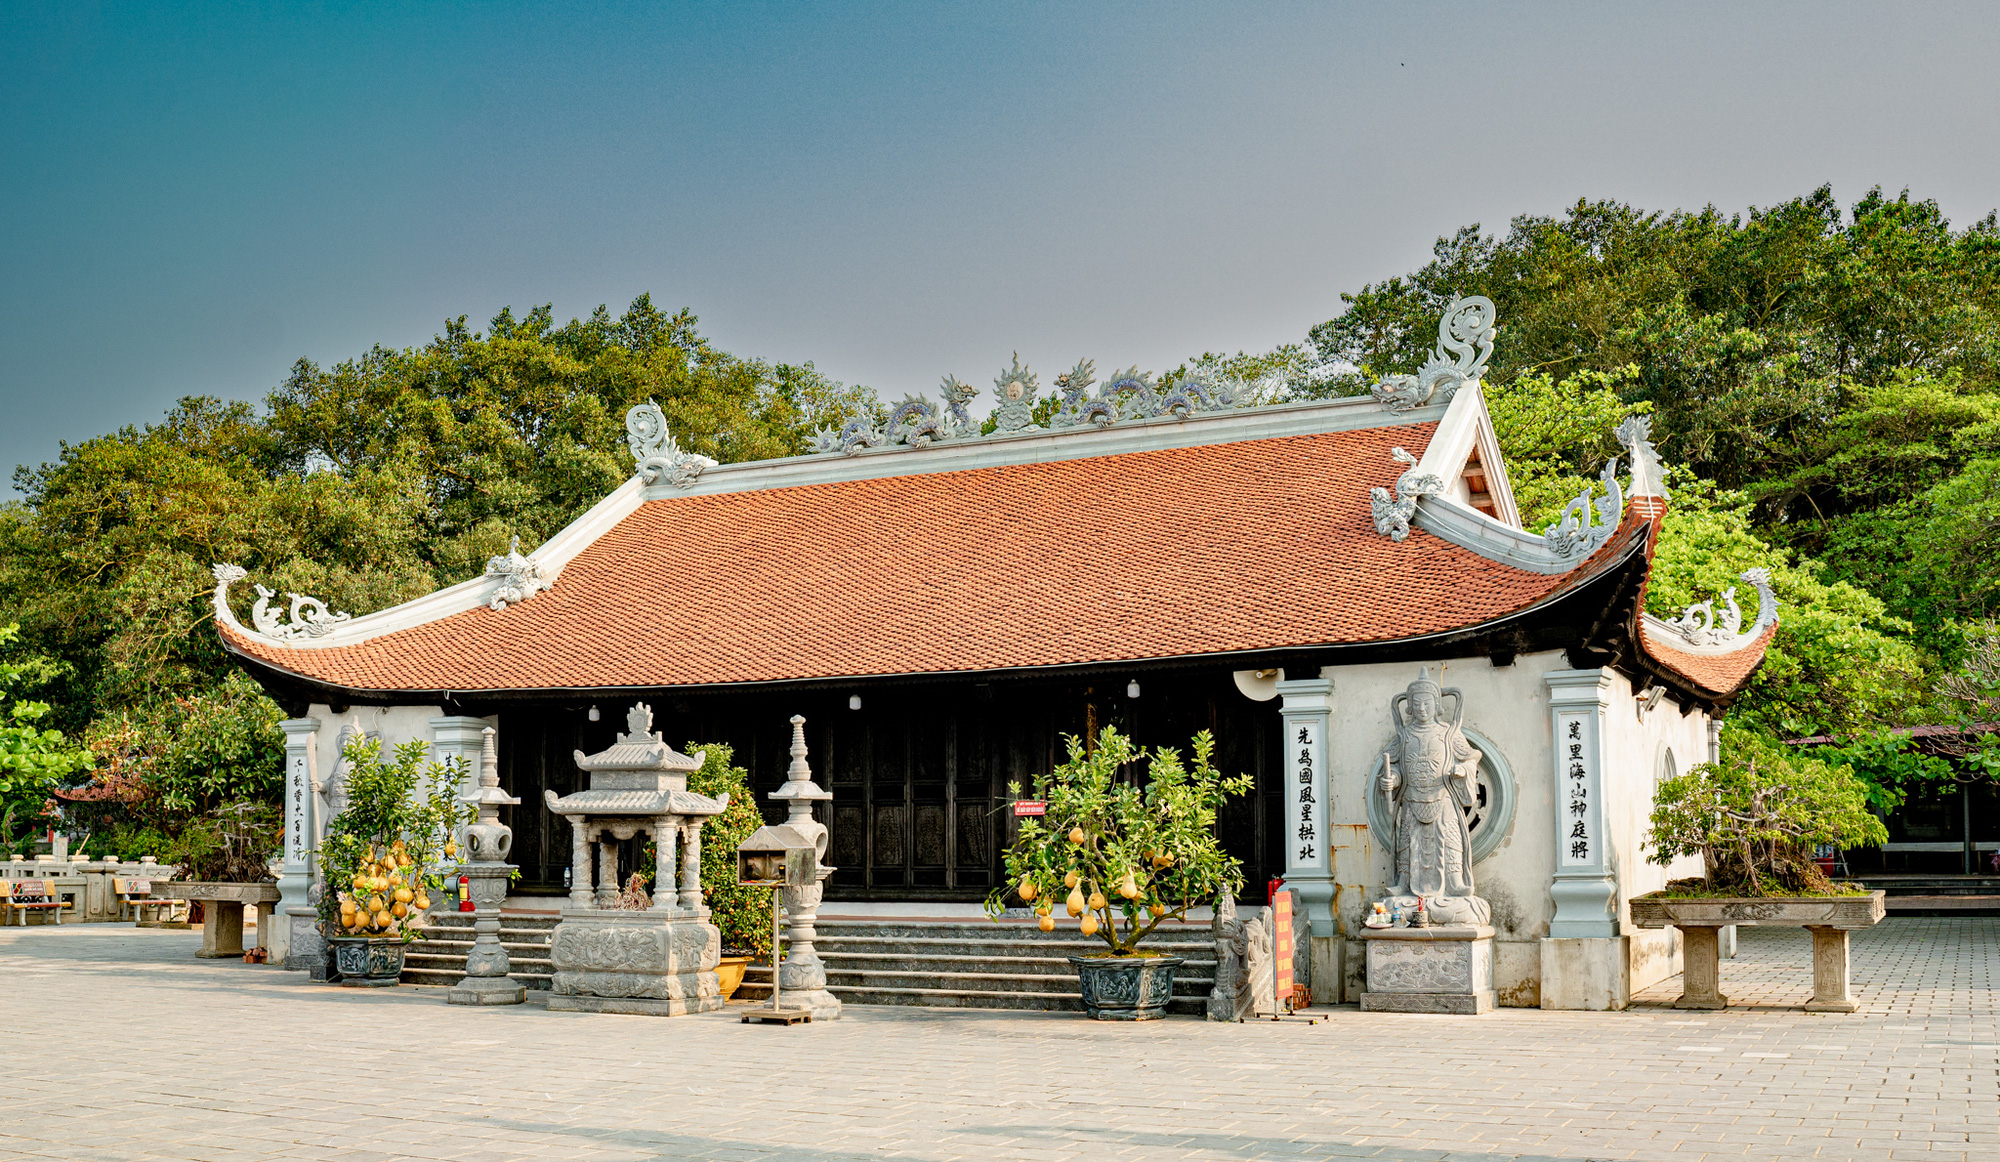  Khám phá đảo bé hạt tiêu có hải đăng cổ nhất Việt Nam, 124 năm vững vàng trước sóng gió - Ảnh 8.